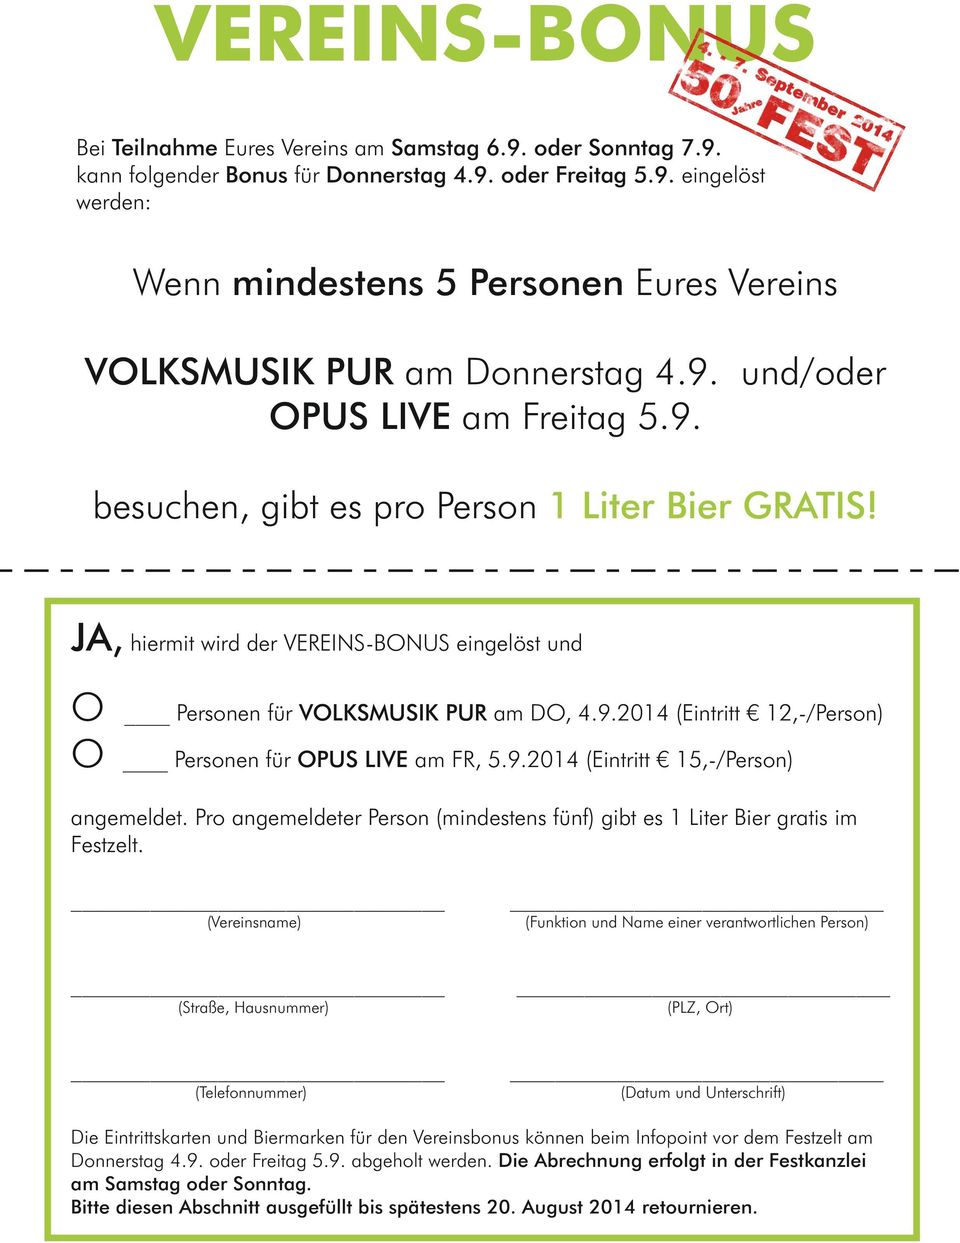 9.2014 (Eintritt 15,-/Person) angemeldet. Pro angemeldeter Person (mindestens fünf) gibt es 1 Liter Bier gratis im Festzelt.